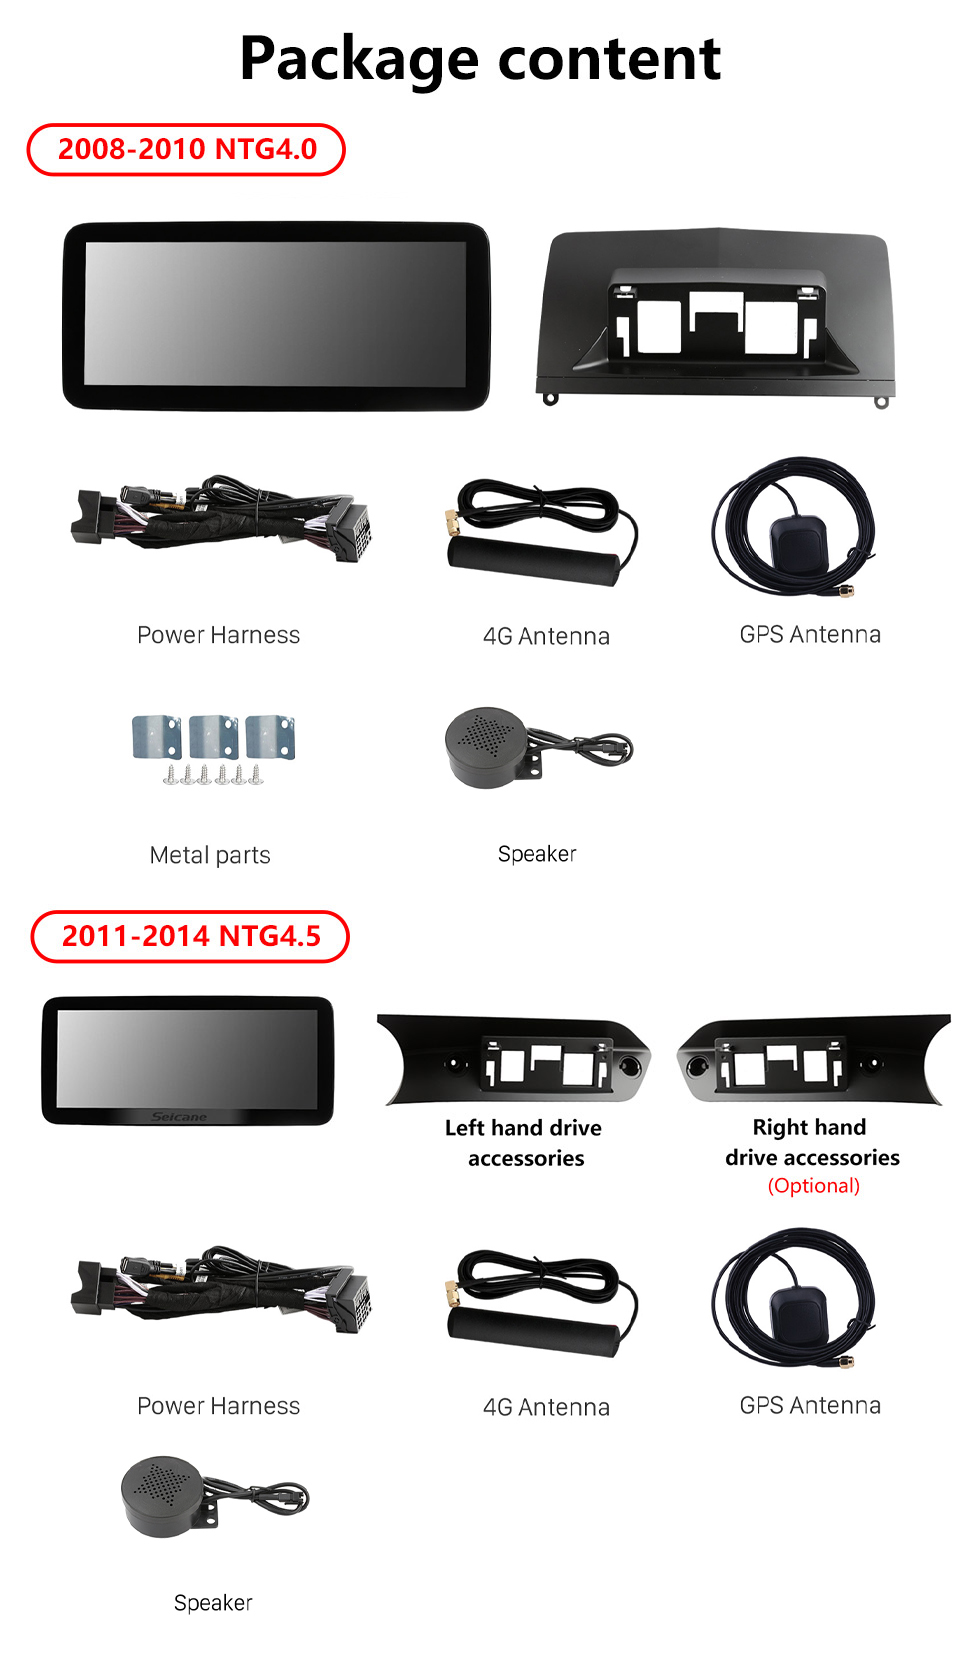 Seicane Carplay 12,3 pouces Android 11.0 pour 2008-2010 2011 2012 2013 2014 Mercedes Classe C W204 C180 C200 C230 C260 C280 C300 Radio Système de navigation GPS avec écran tactile HD Bluetooth